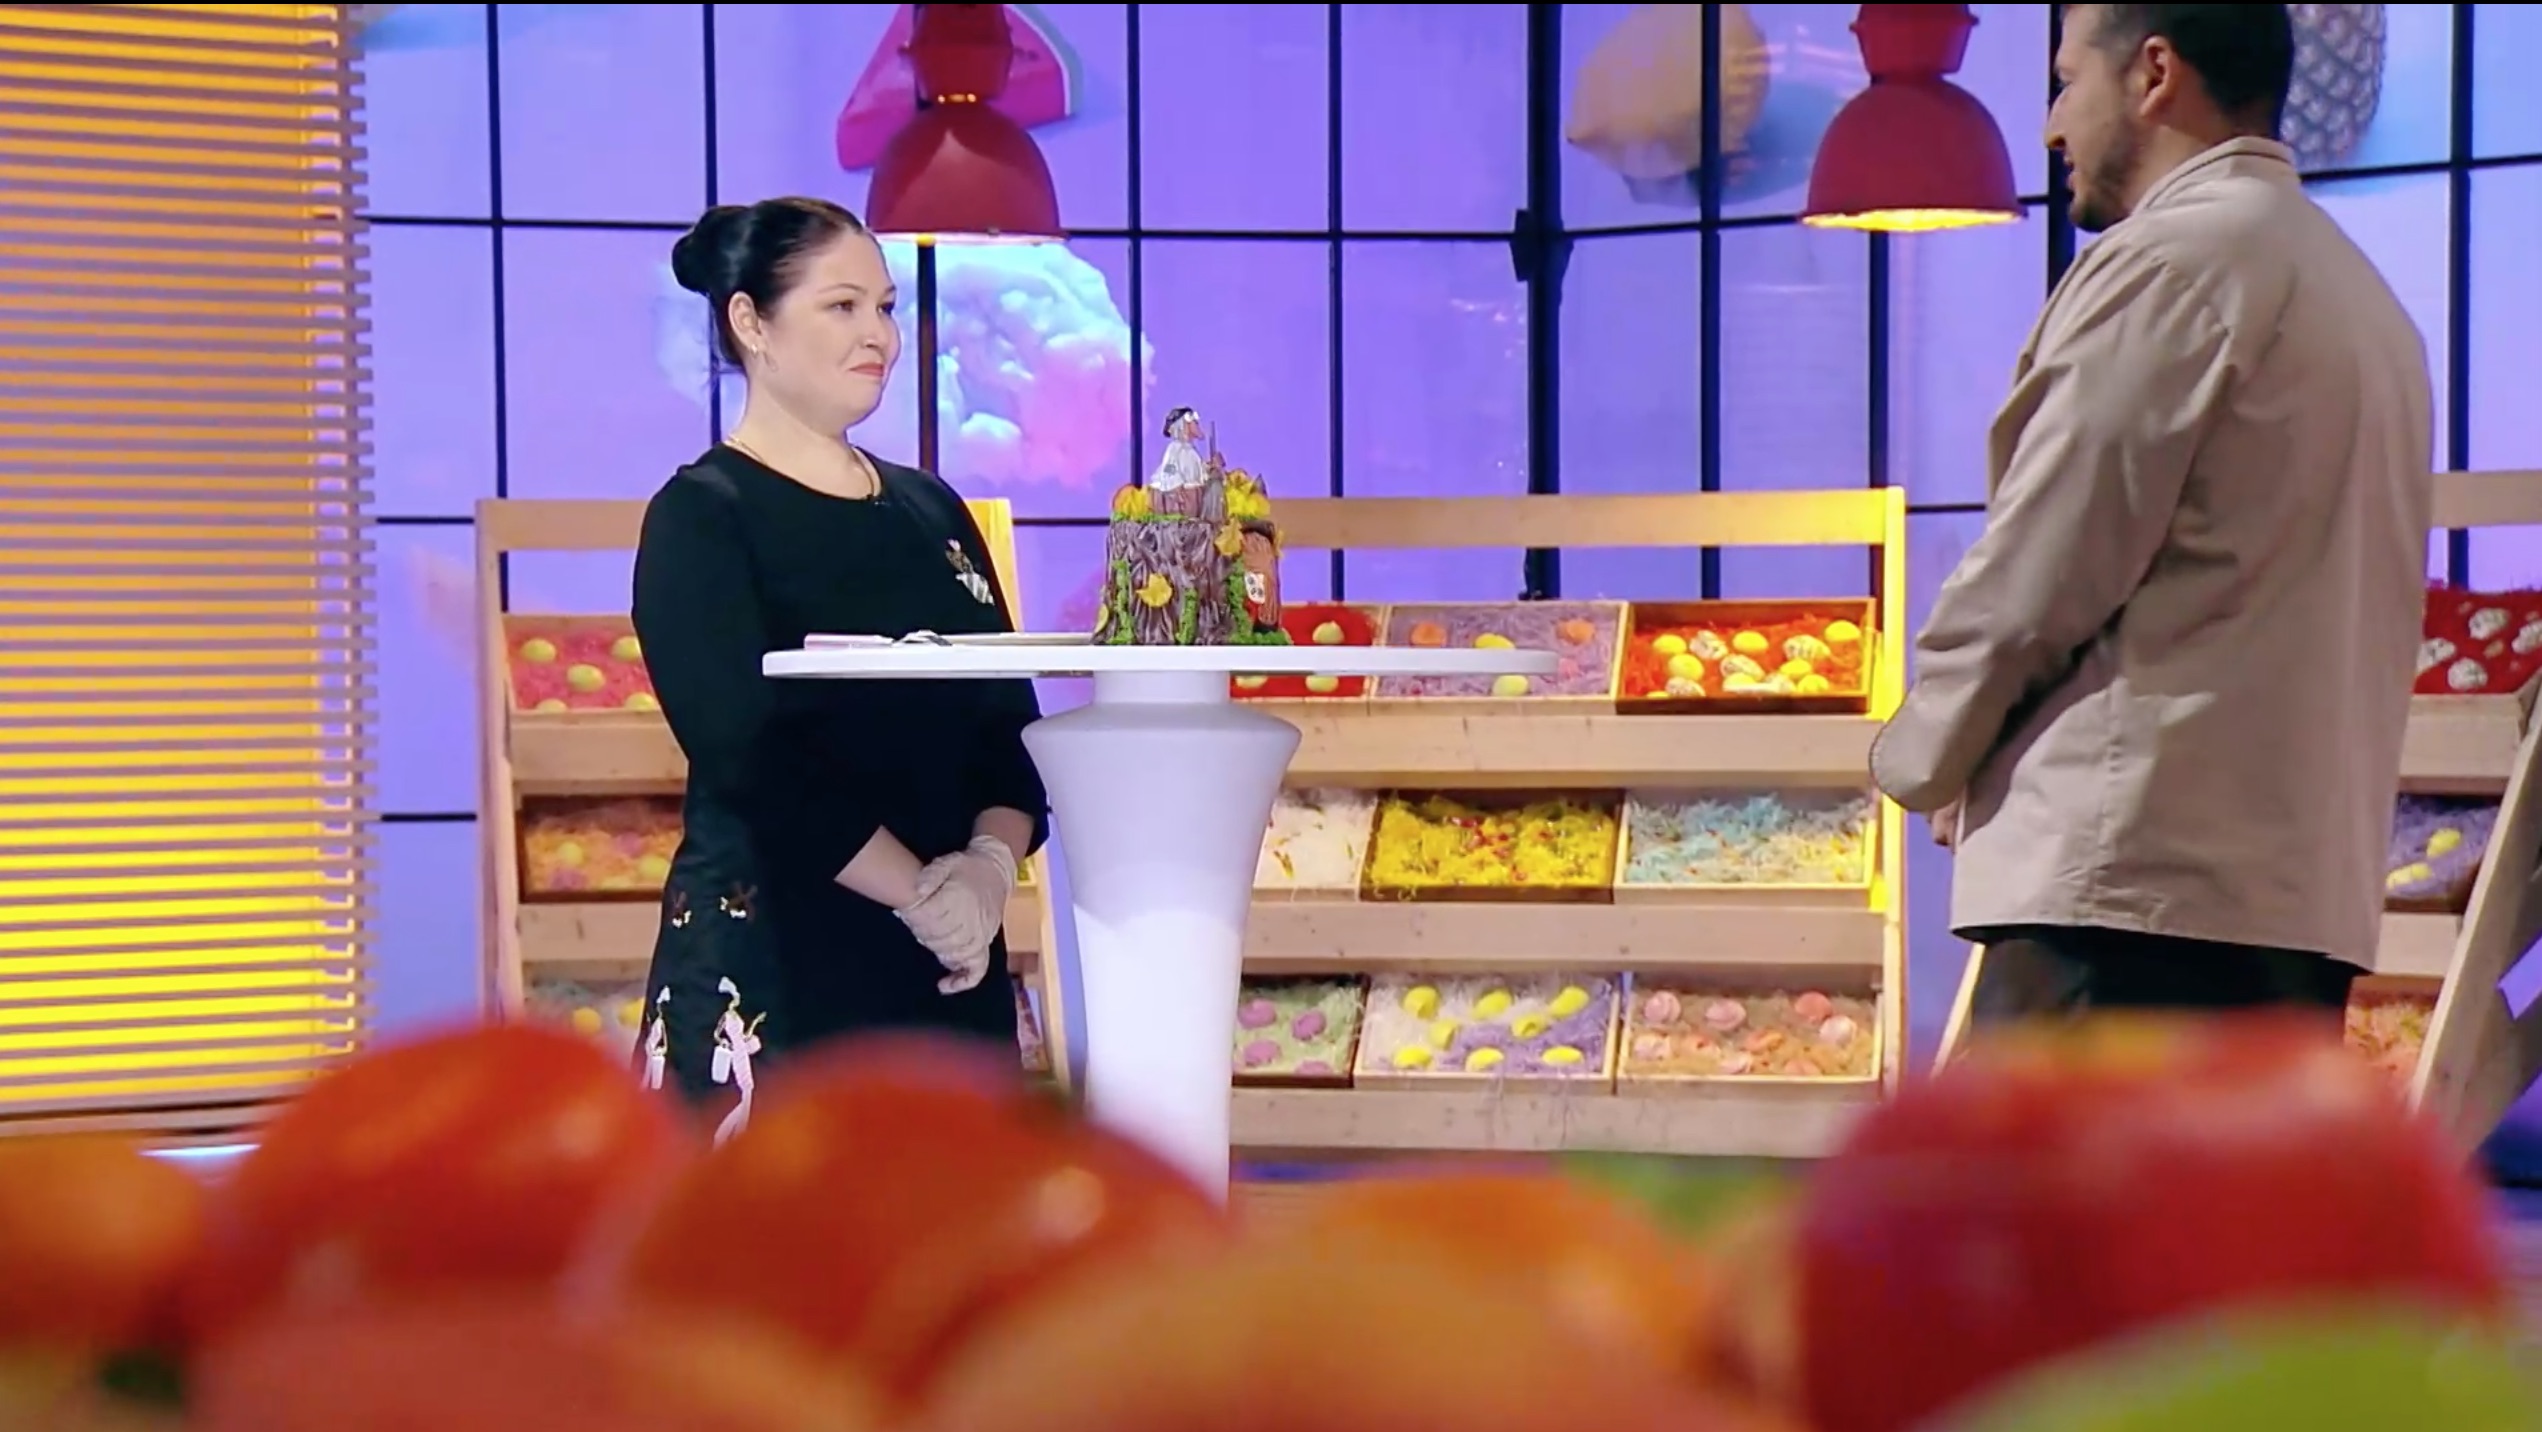 Владимирский кондитер может выиграть миллион рублей в шоу «Кондитер». В качестве сладкого проекта она представила торт с Бабой Ягой.